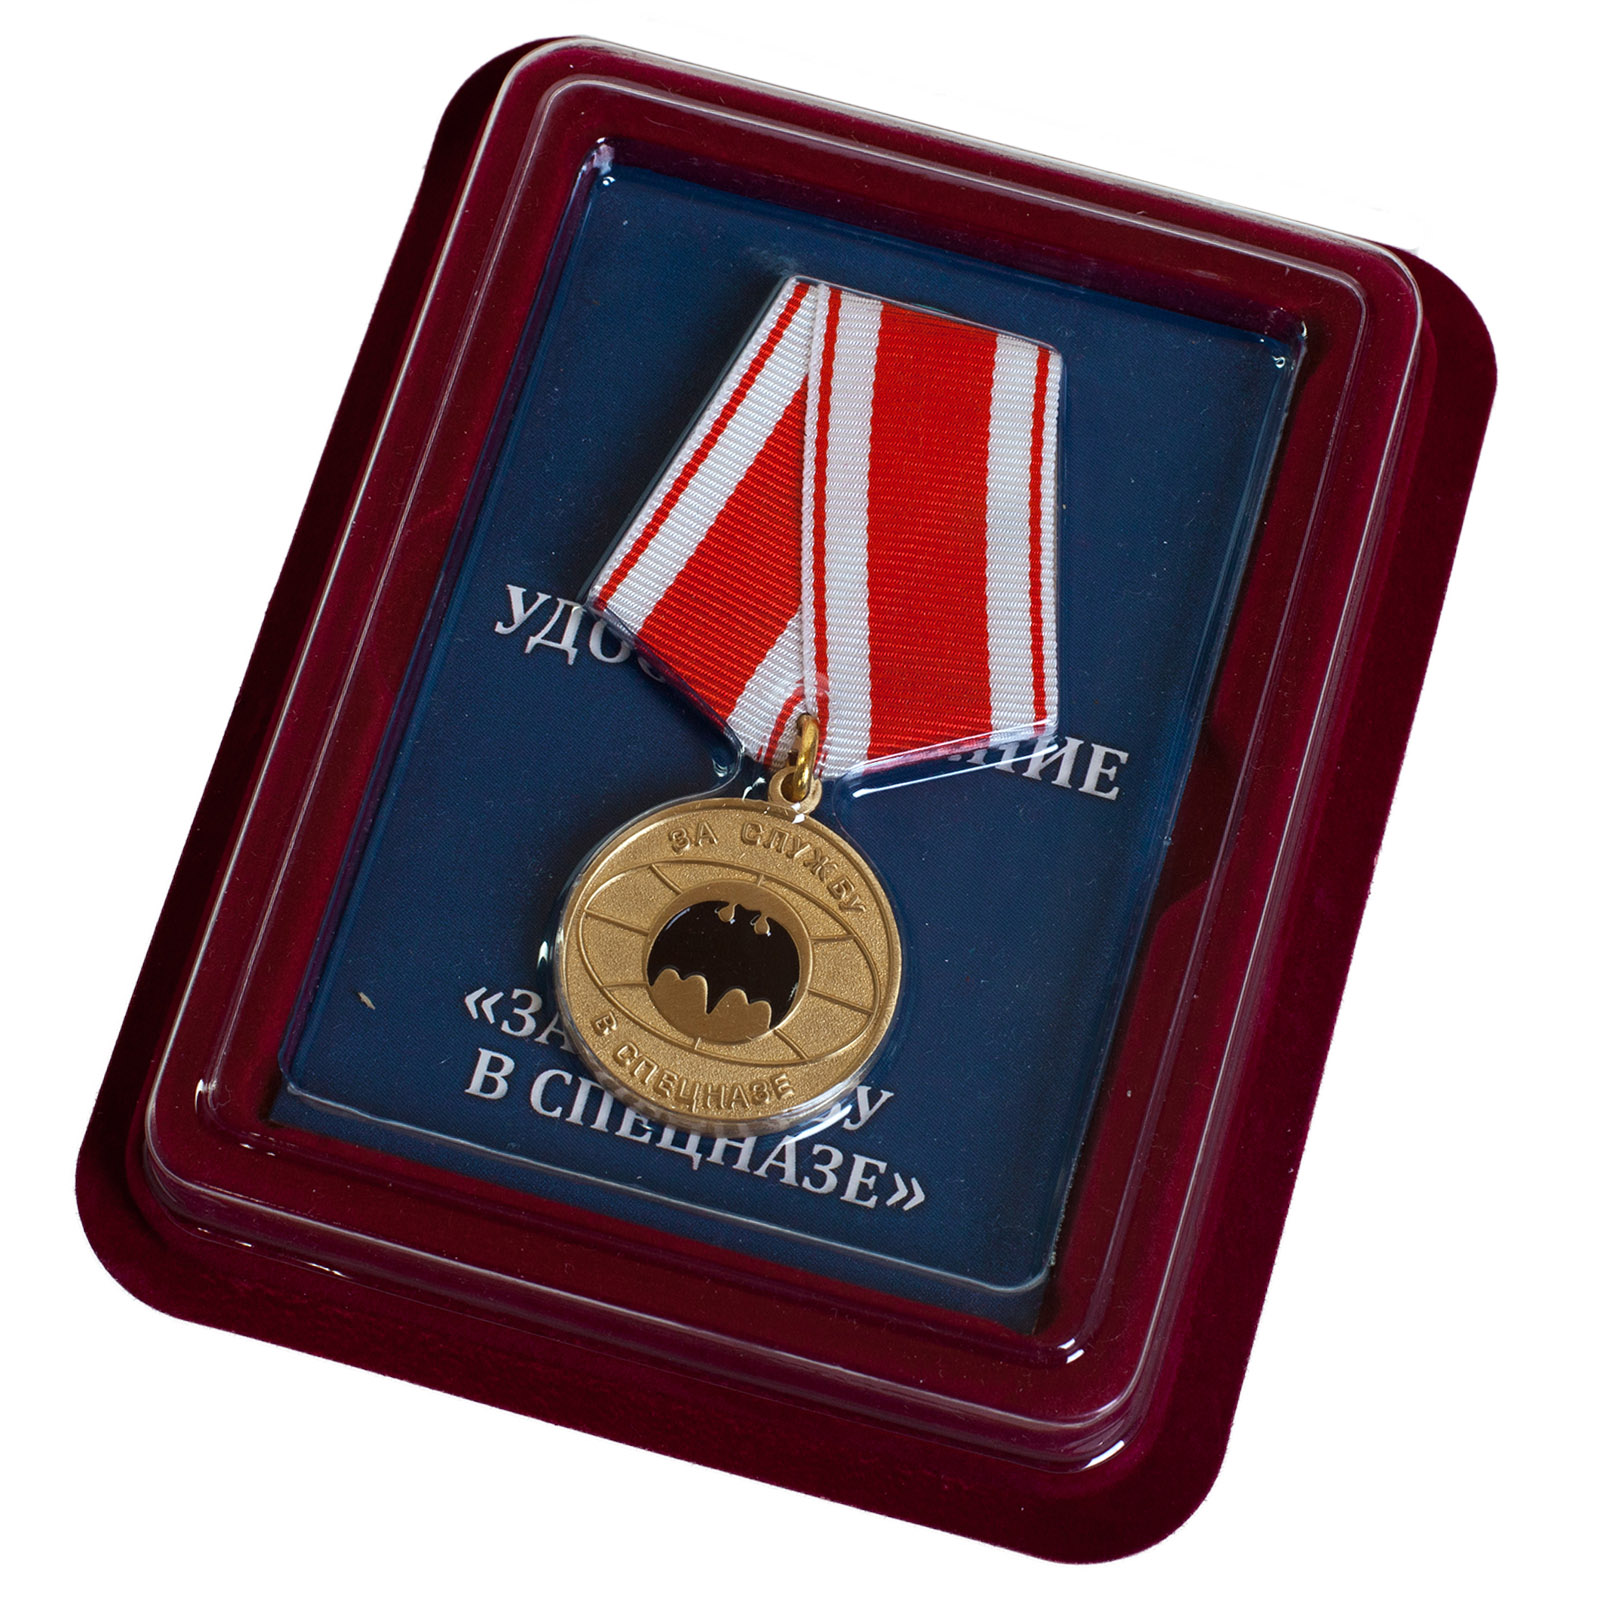 Купить памятную медаль За службу в спецназе оптом или в розницу